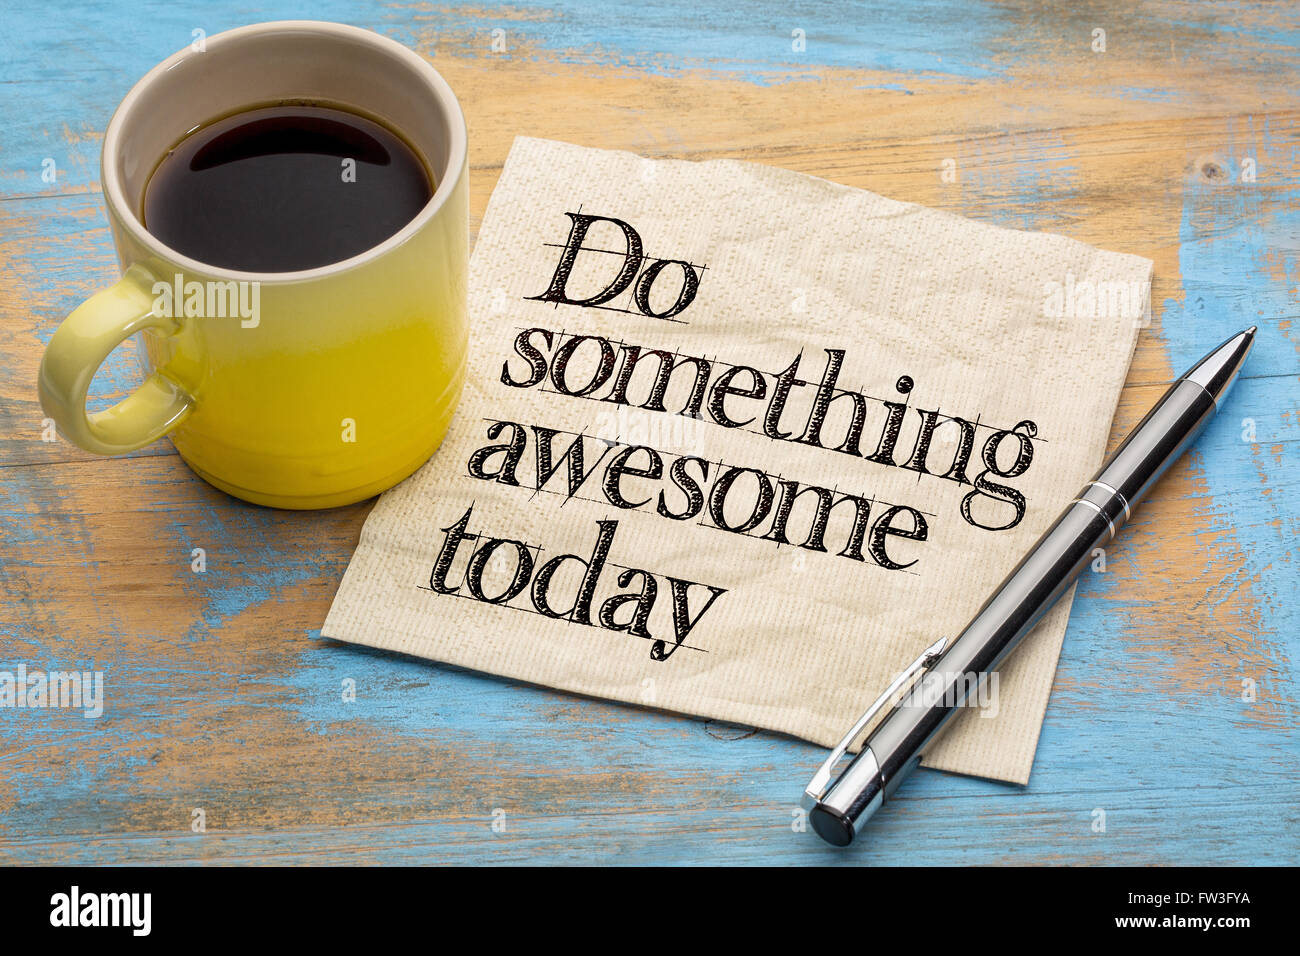 Faire quelque chose de génial aujourd'hui - des conseils ou de rappel - main sur une serviette avec une tasse de café Banque D'Images